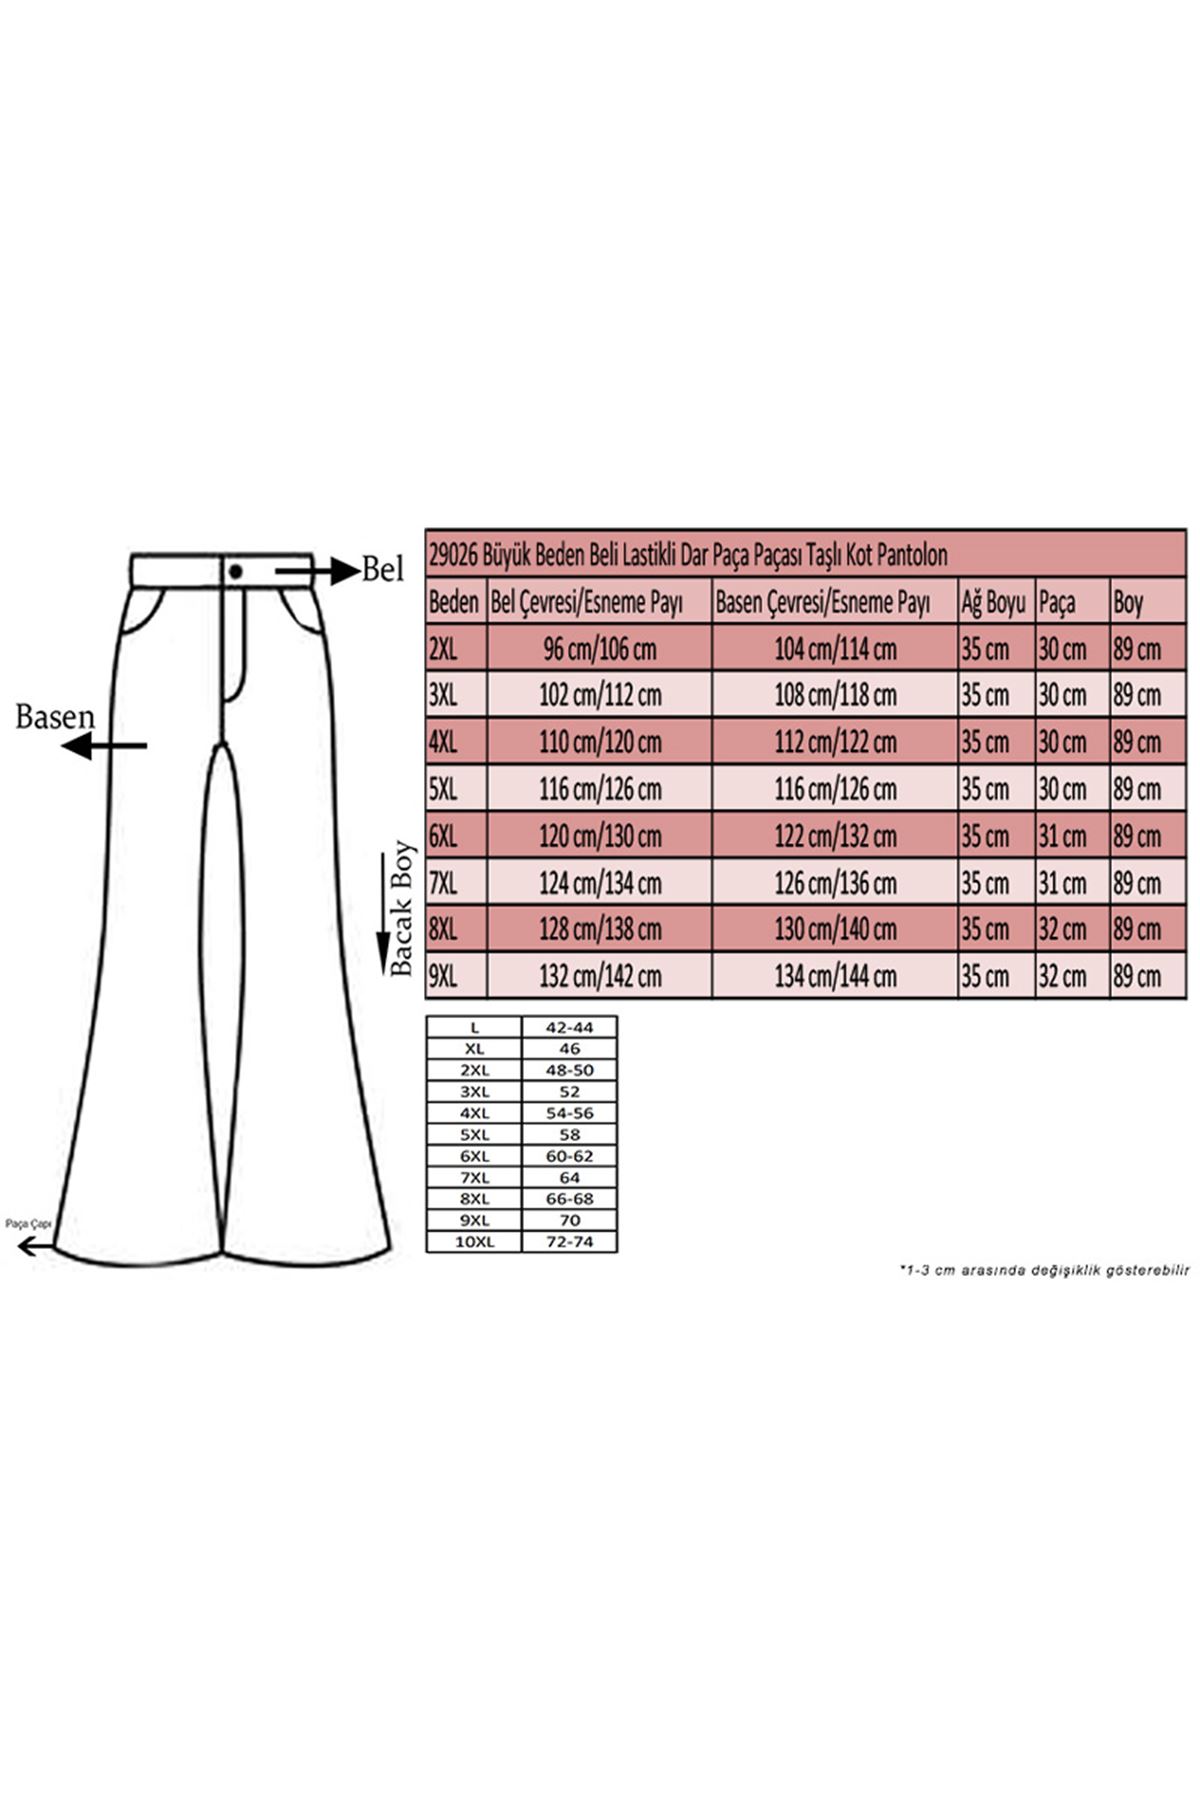 D-29026 Büyük Beden Beli Lastikli Dar Paça Paçası Taşlı Defolu Kot Pantolon-Lacivert 